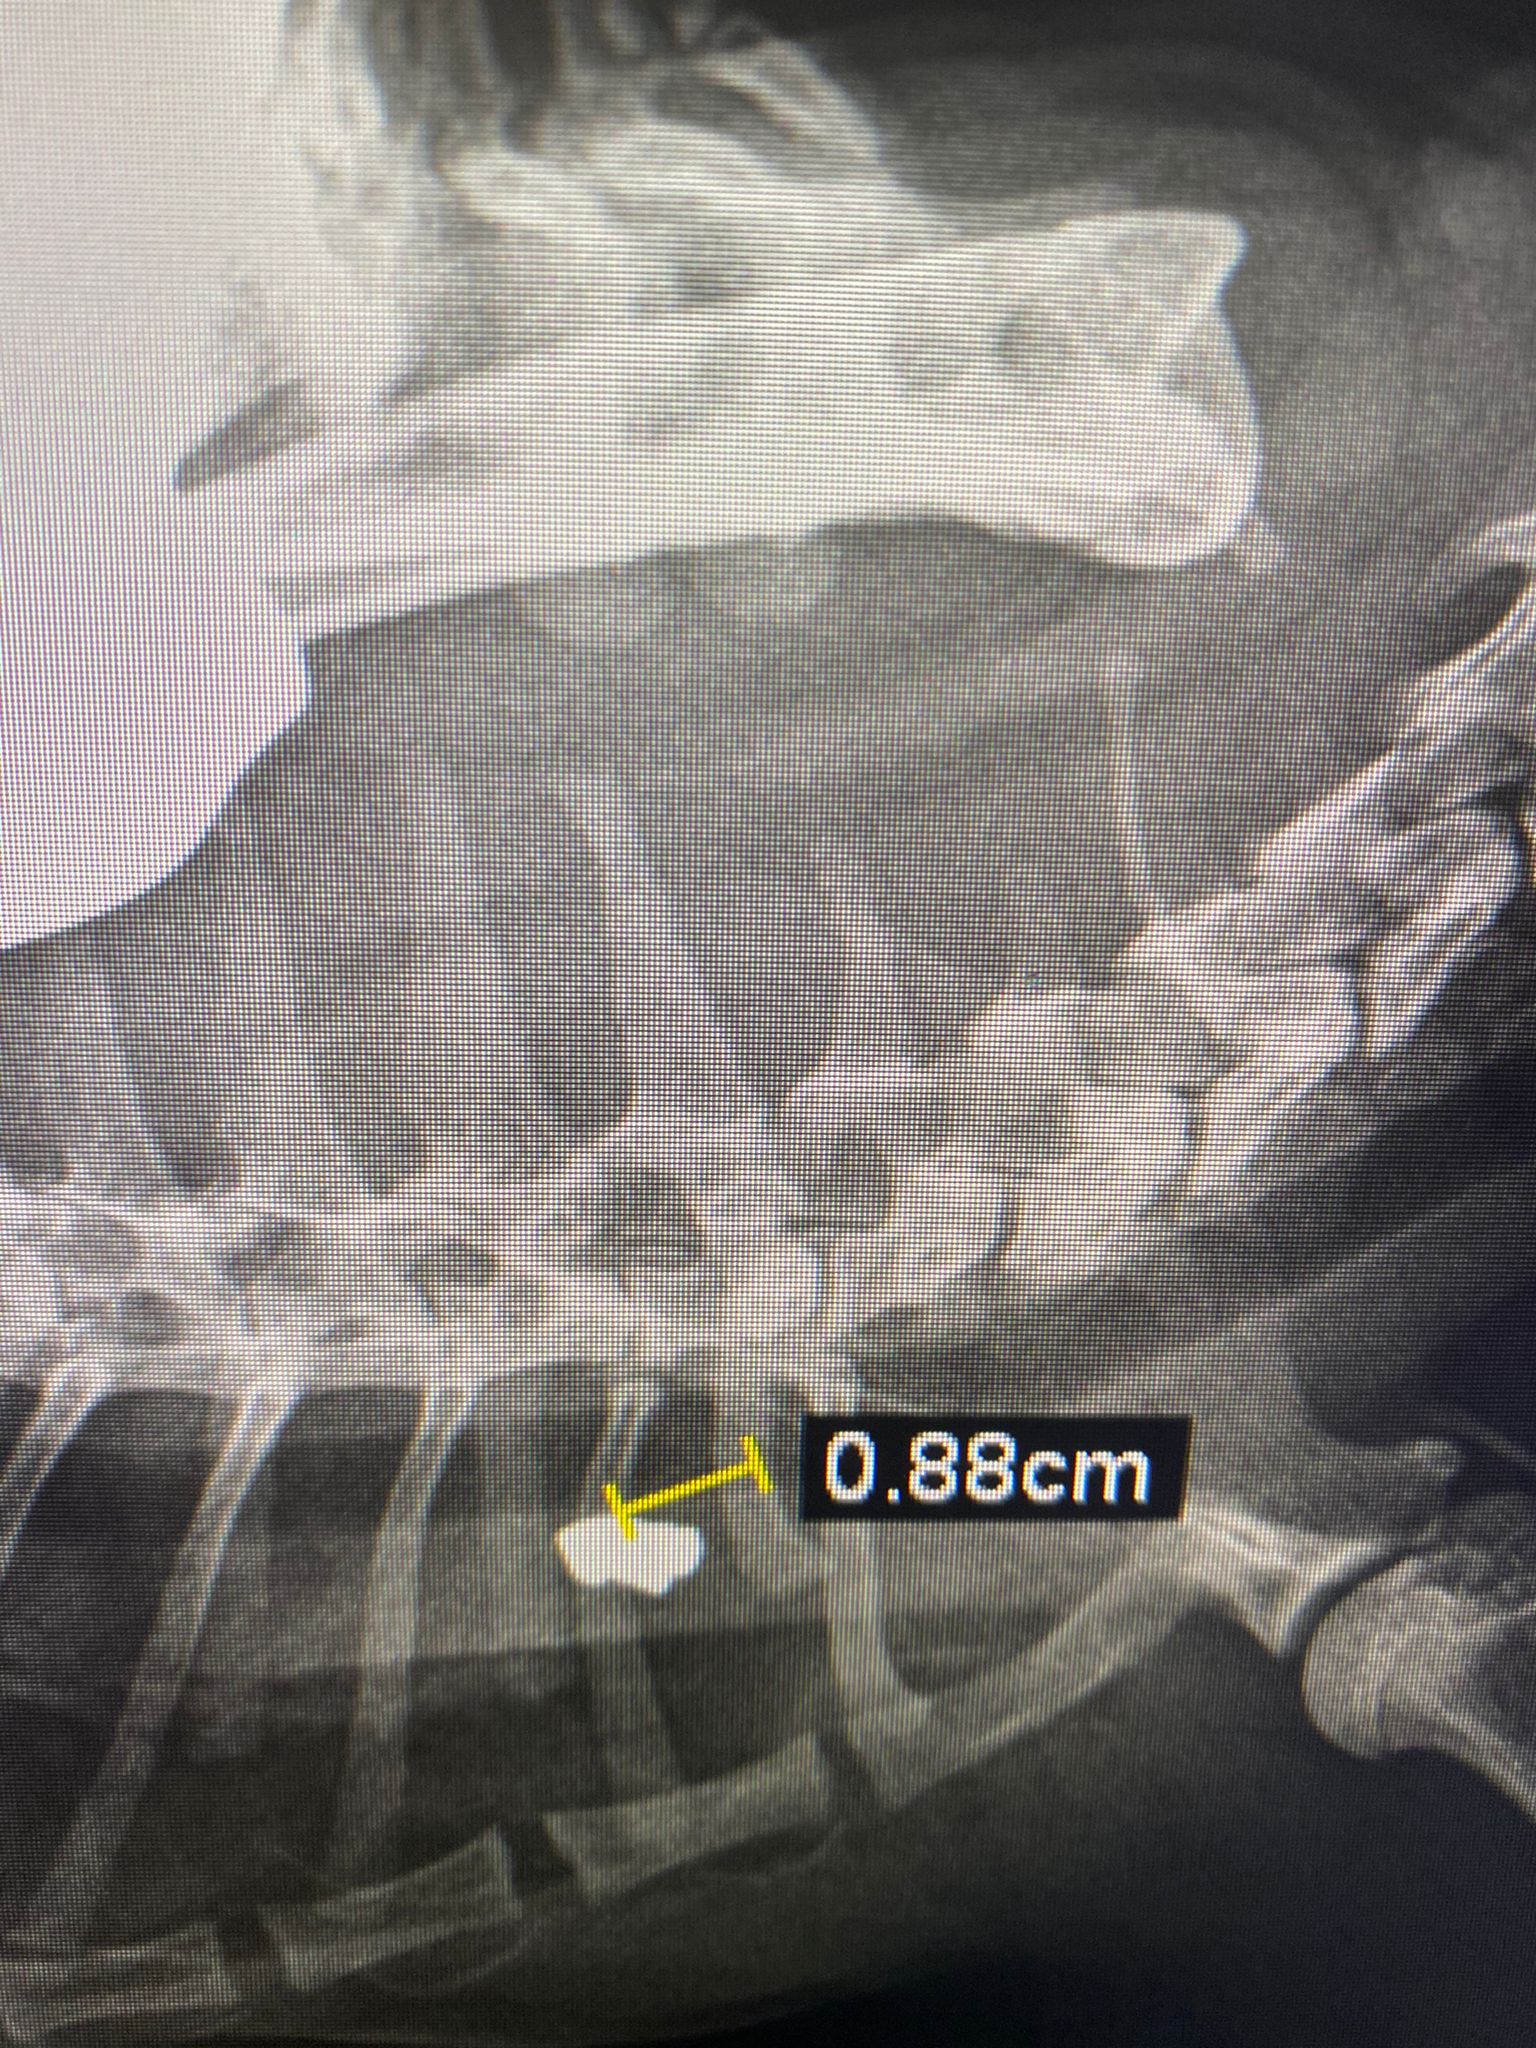 La gatta Pera ferita da un proiettile ad aria compressa - radiografia